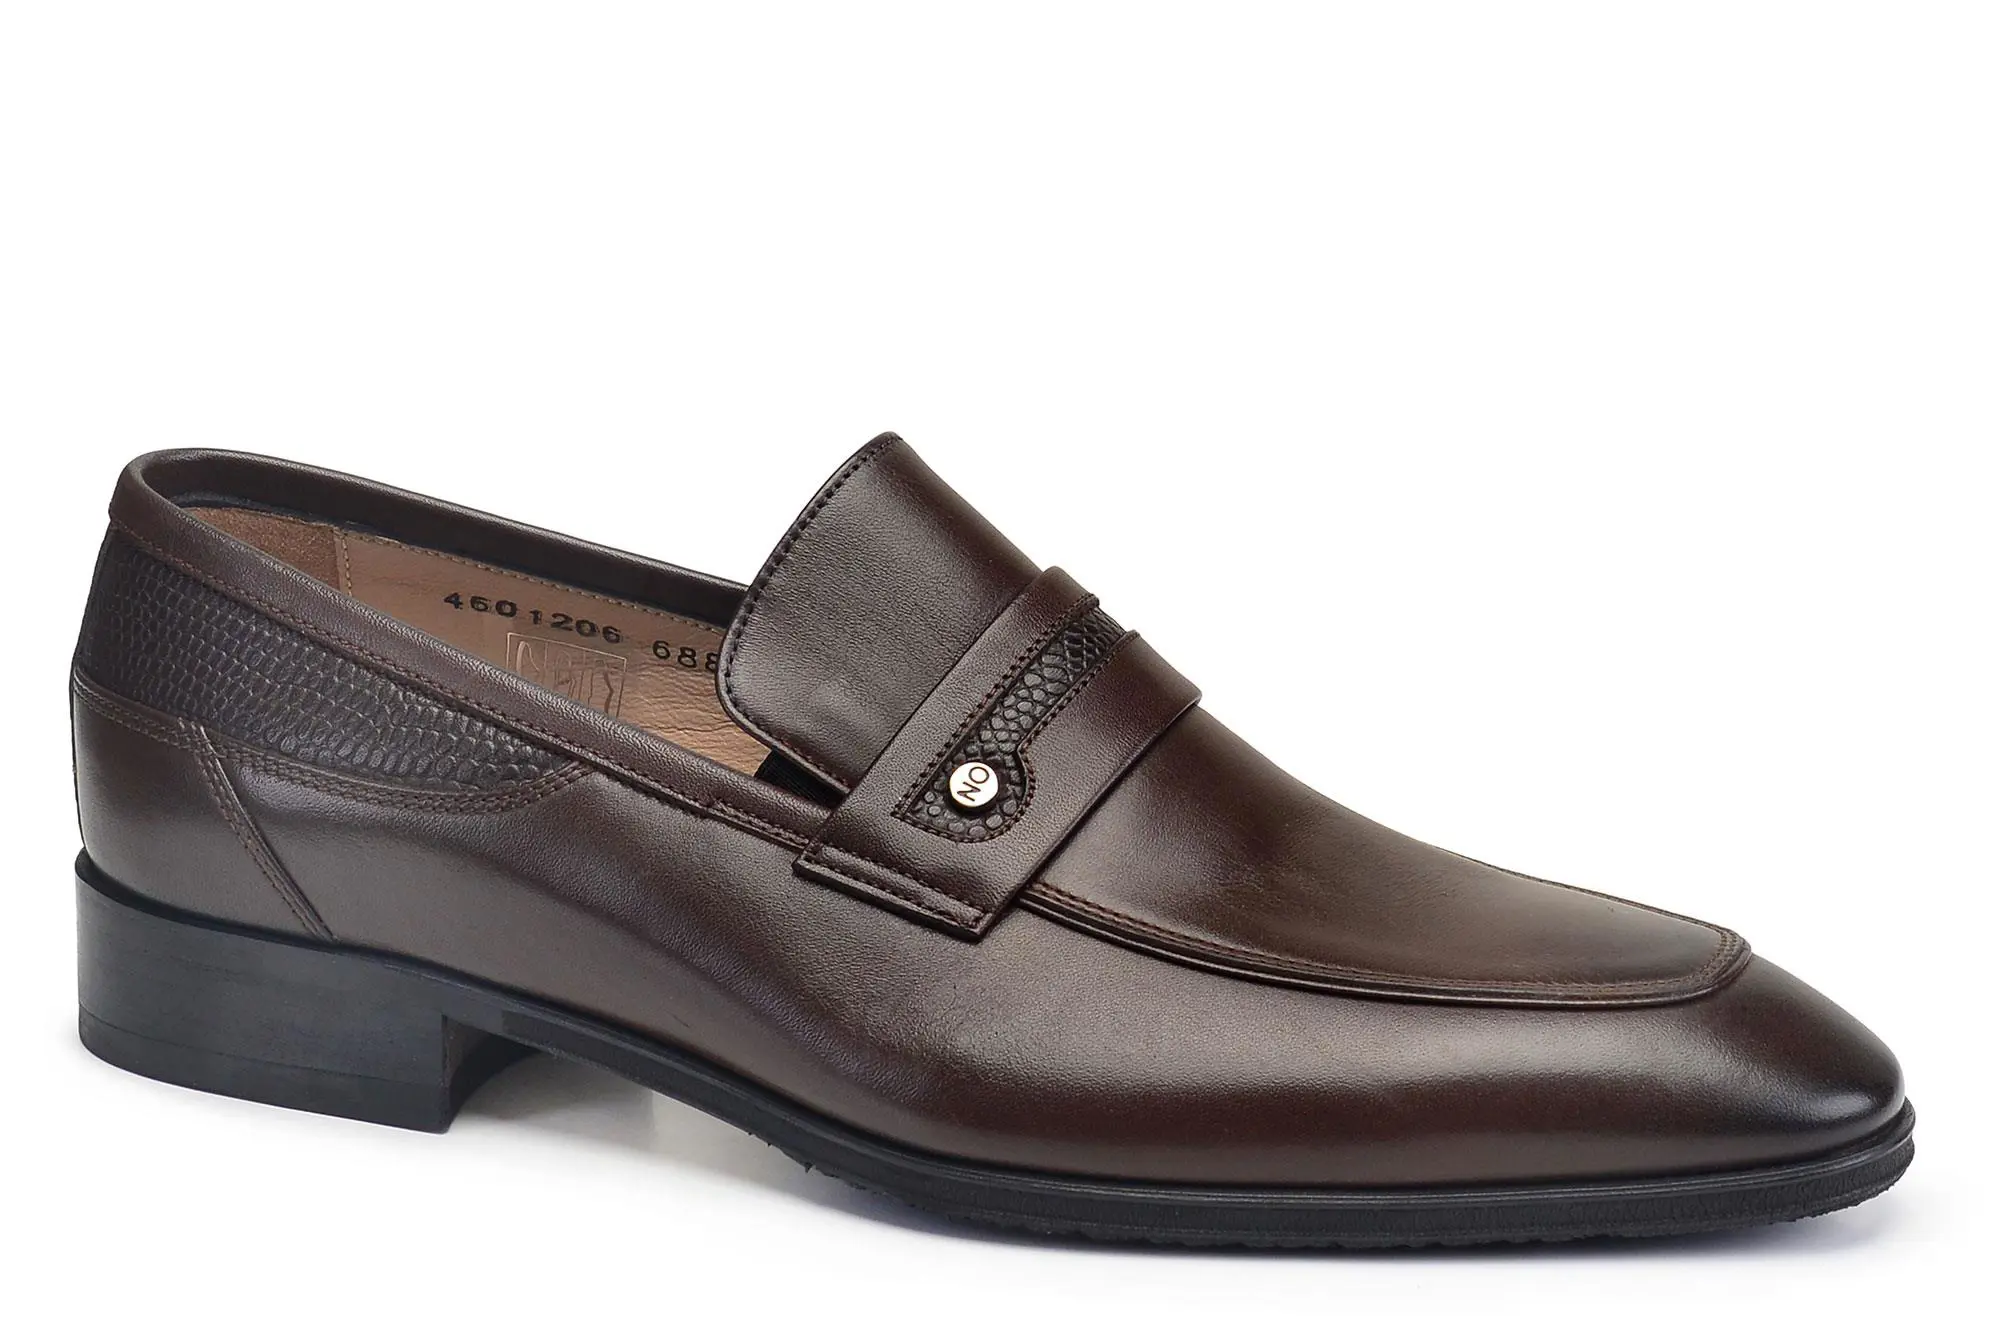 Nevzat Onay Kahverengi Klasik Loafer Kışlık Erkek Ayakkabı -68852-. 2